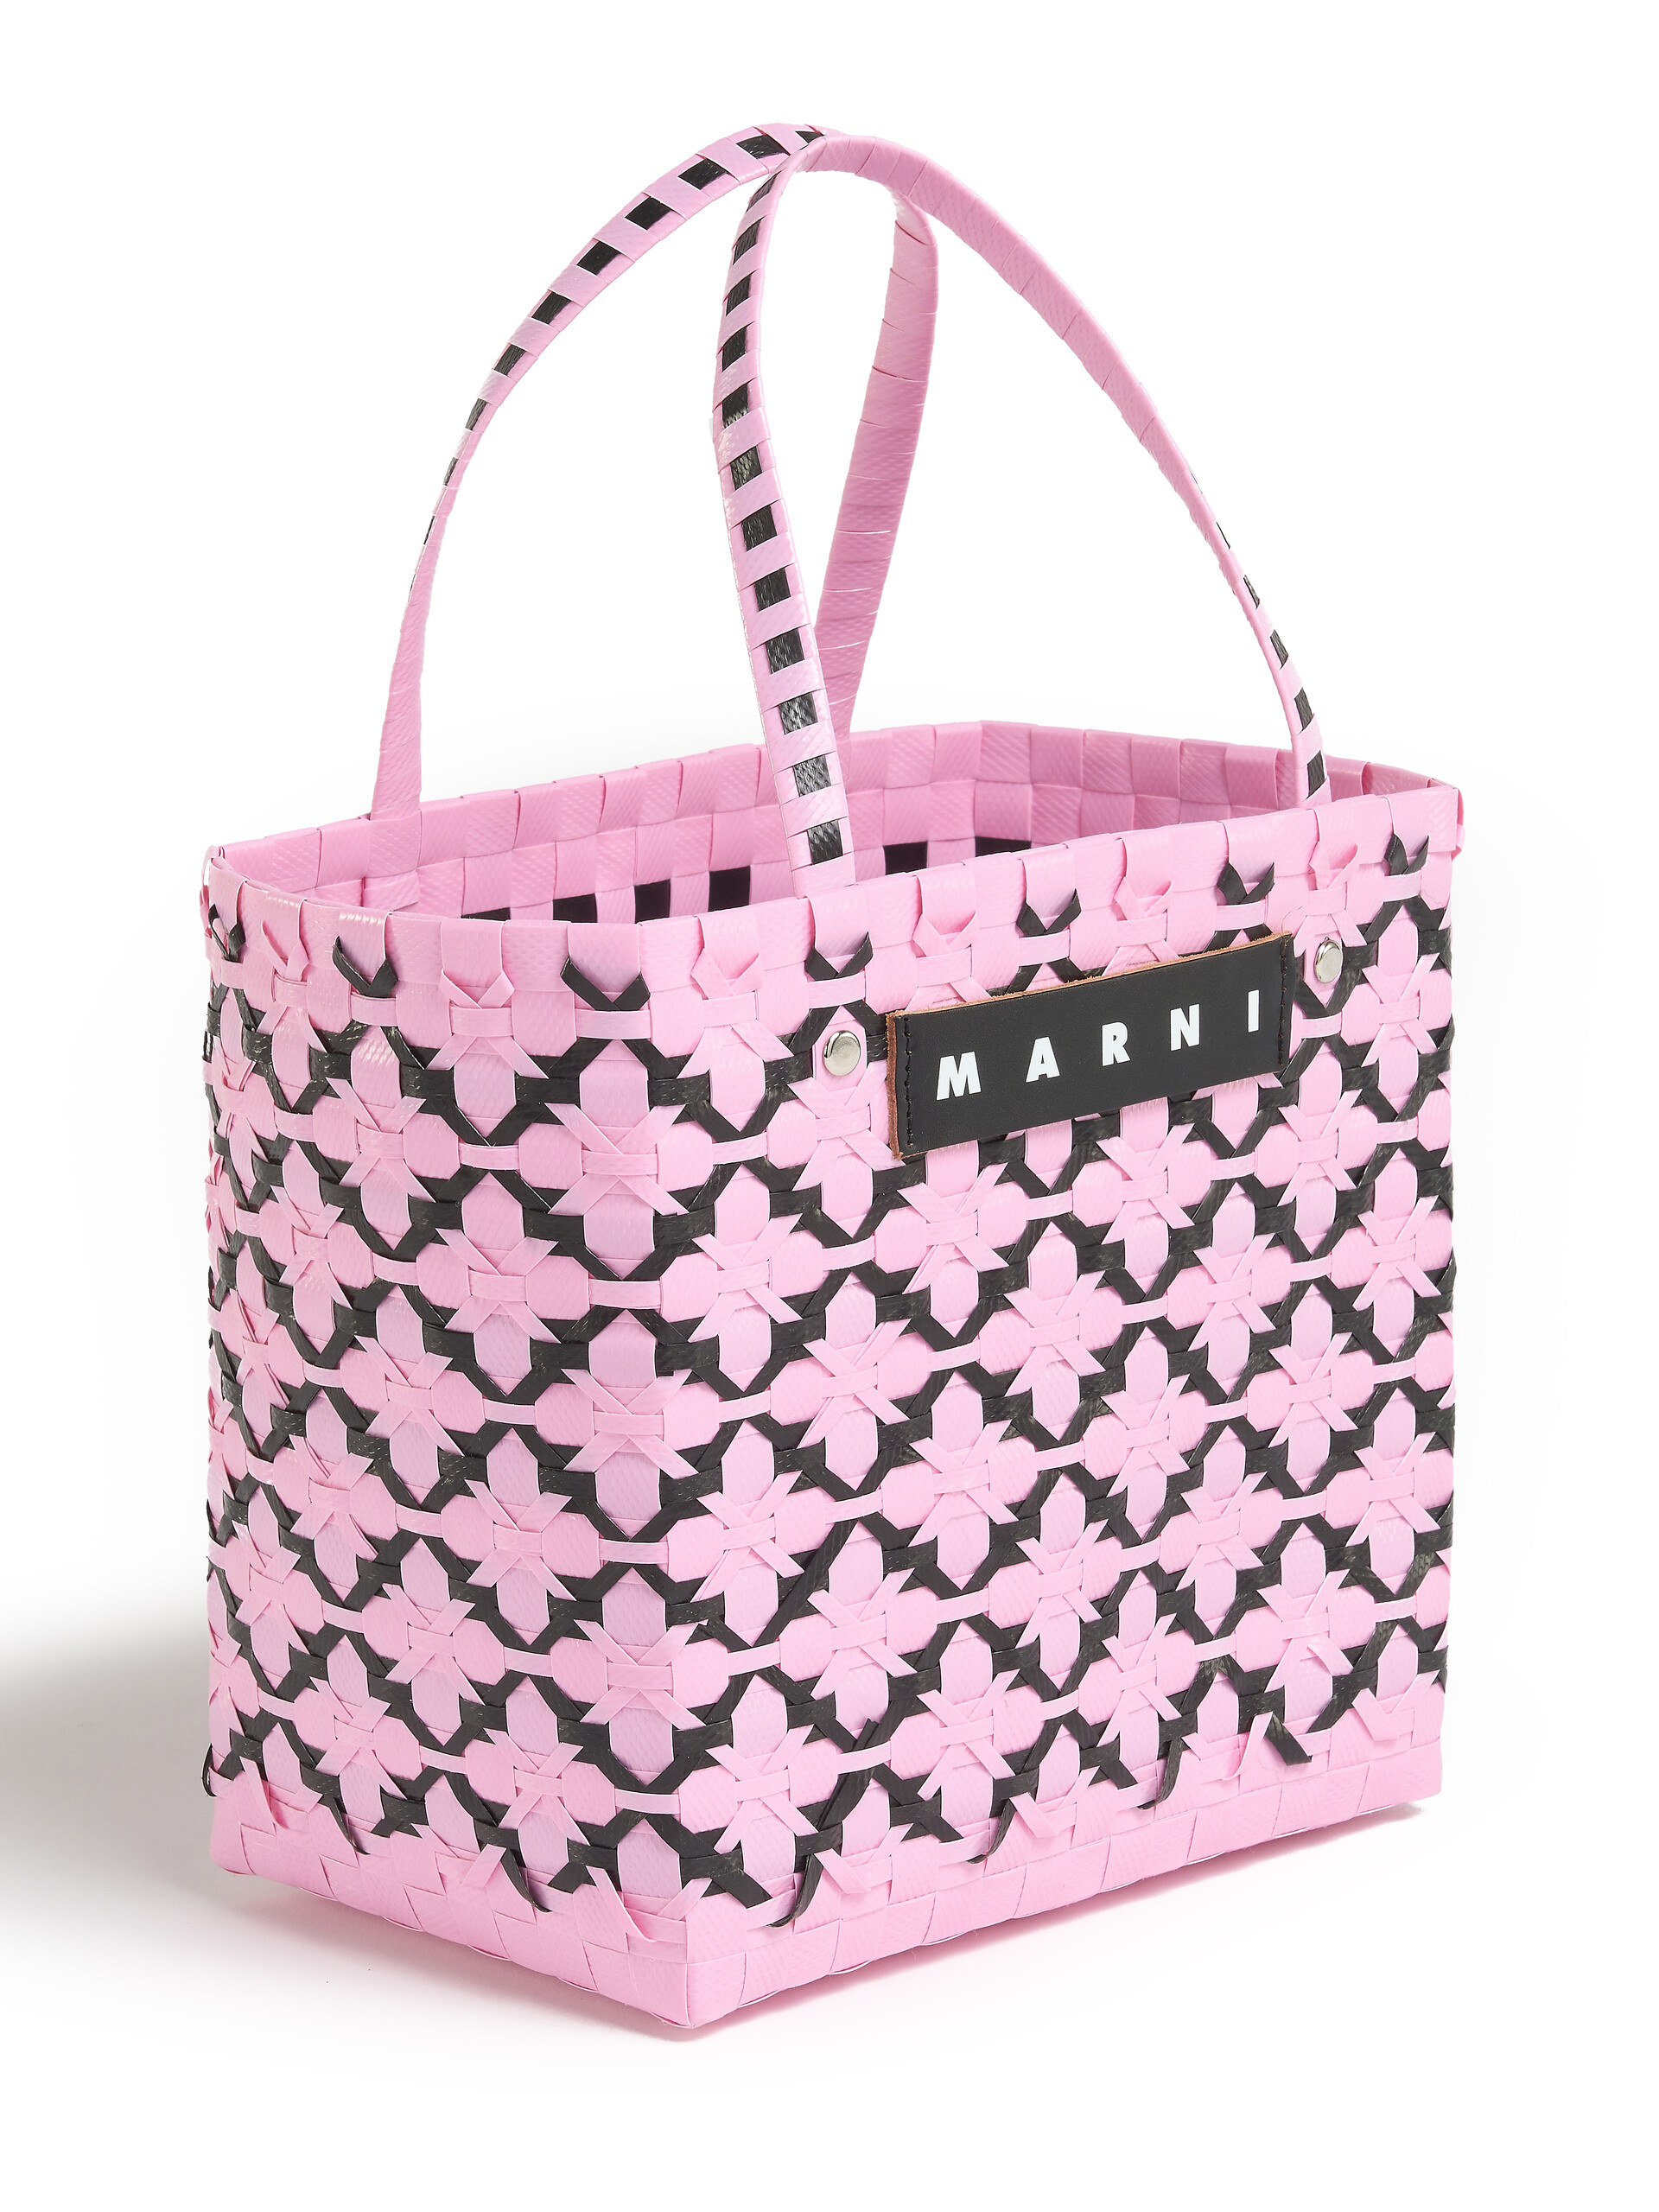 Pink and black MARNI MARKET BASKET bag